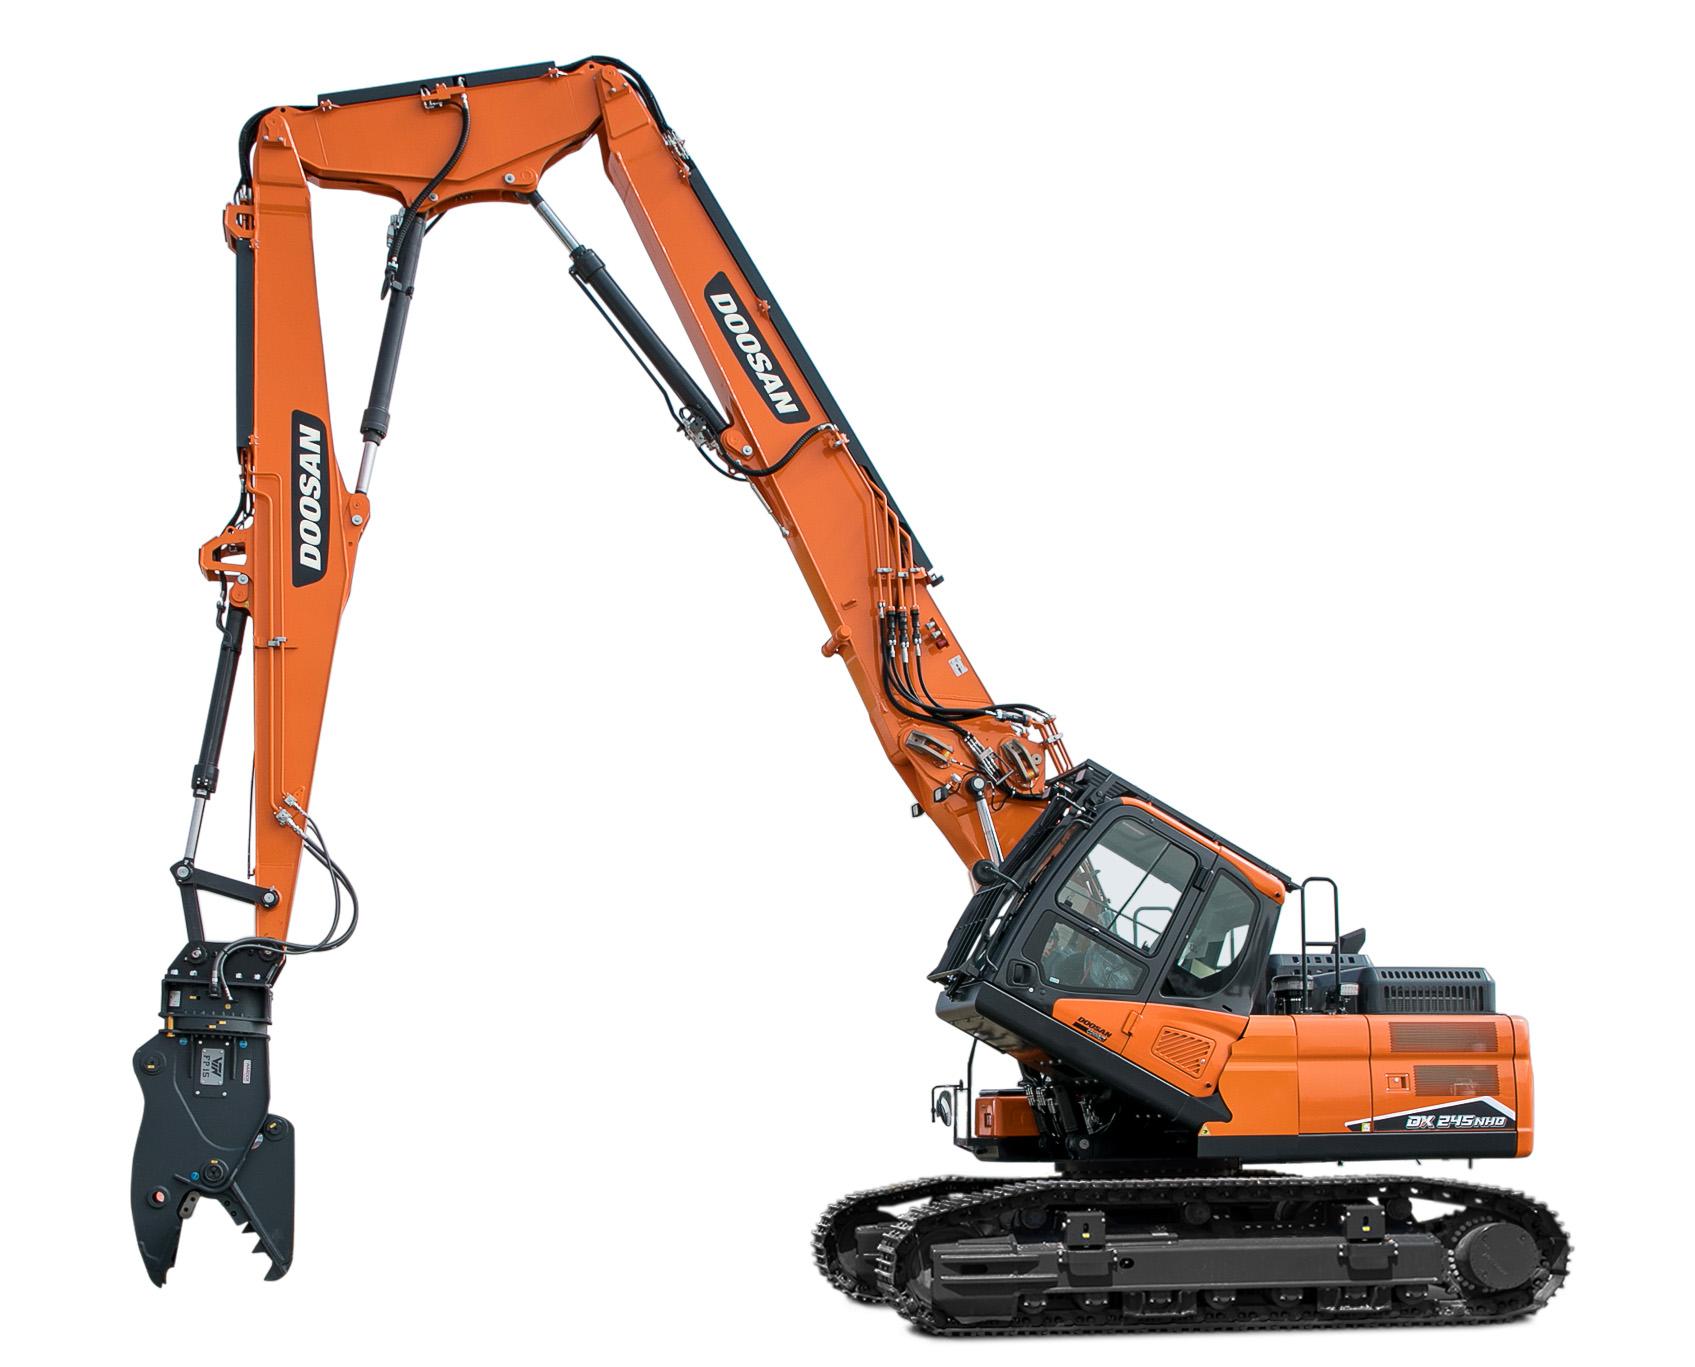 Doosan launches new demolition excavator